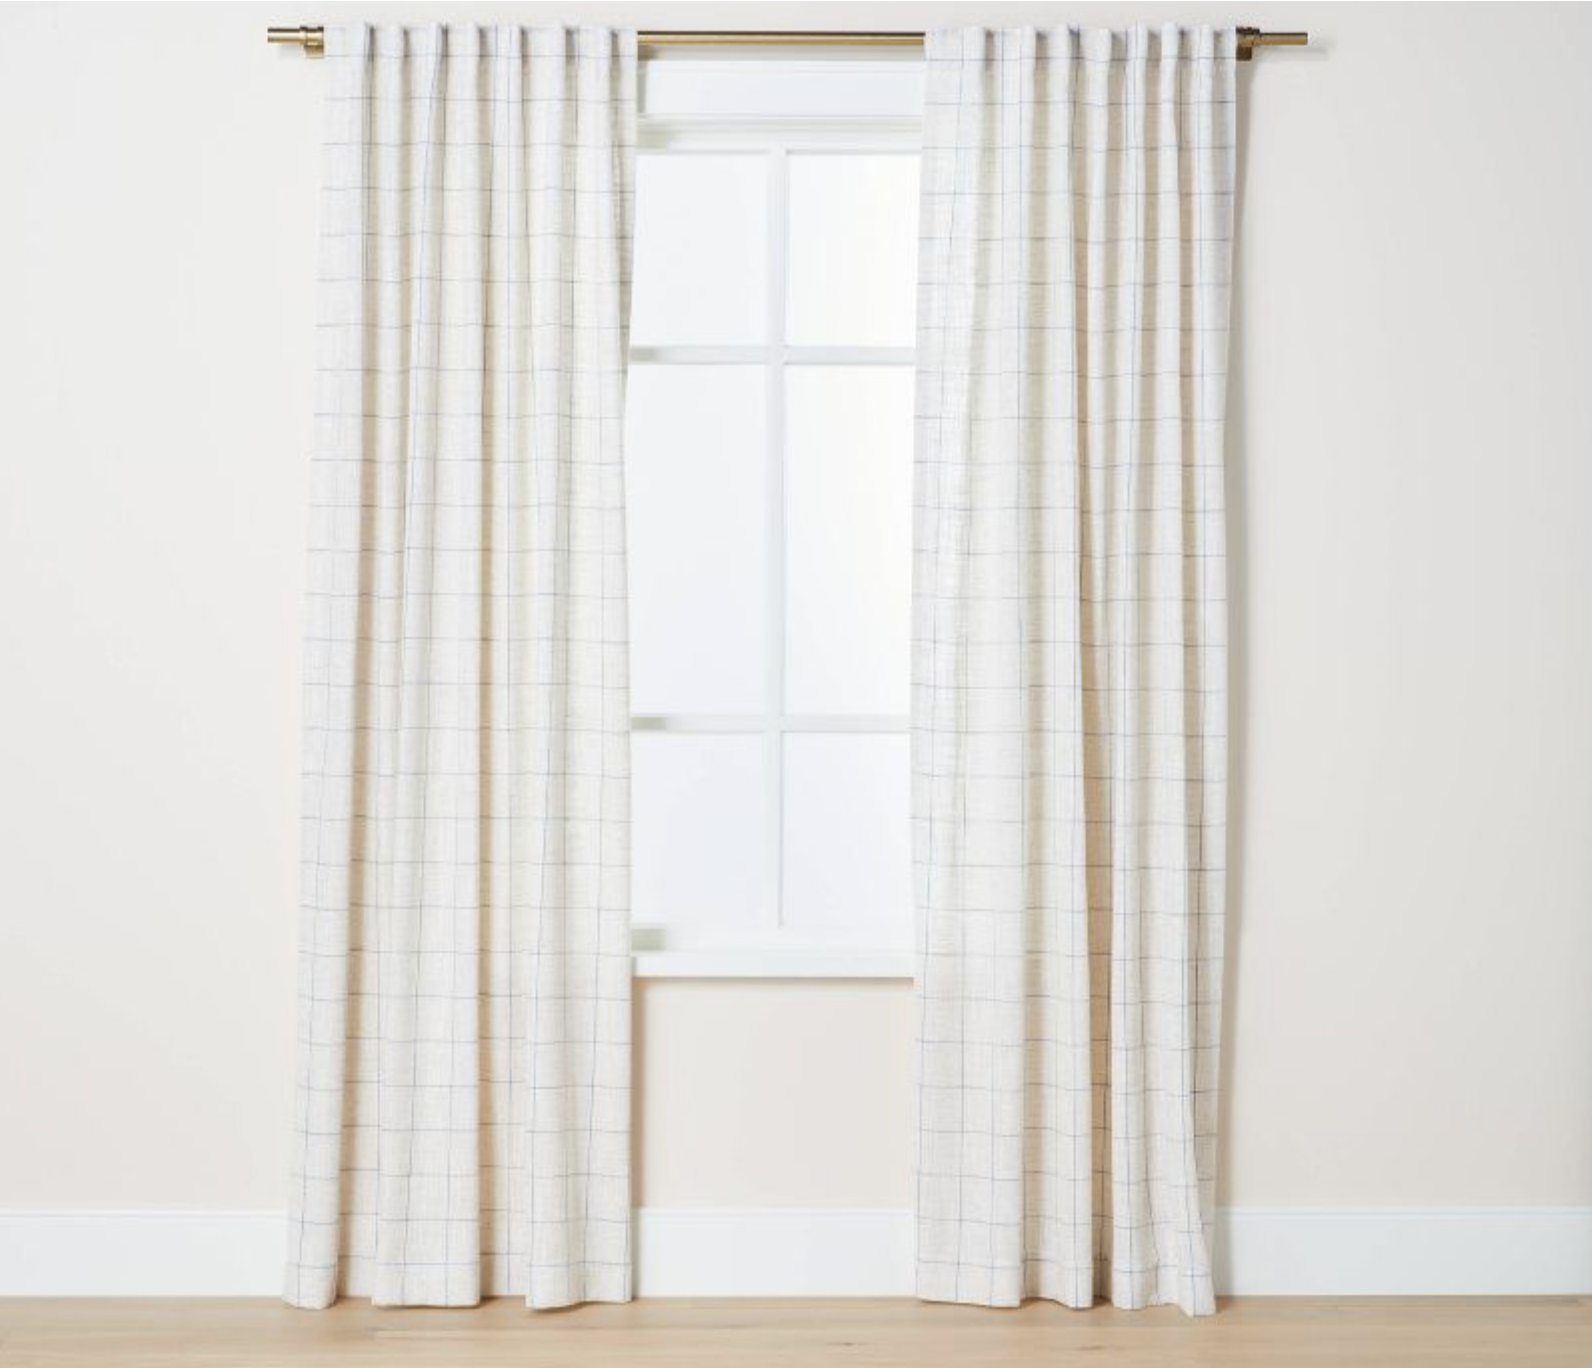 plaid curtains